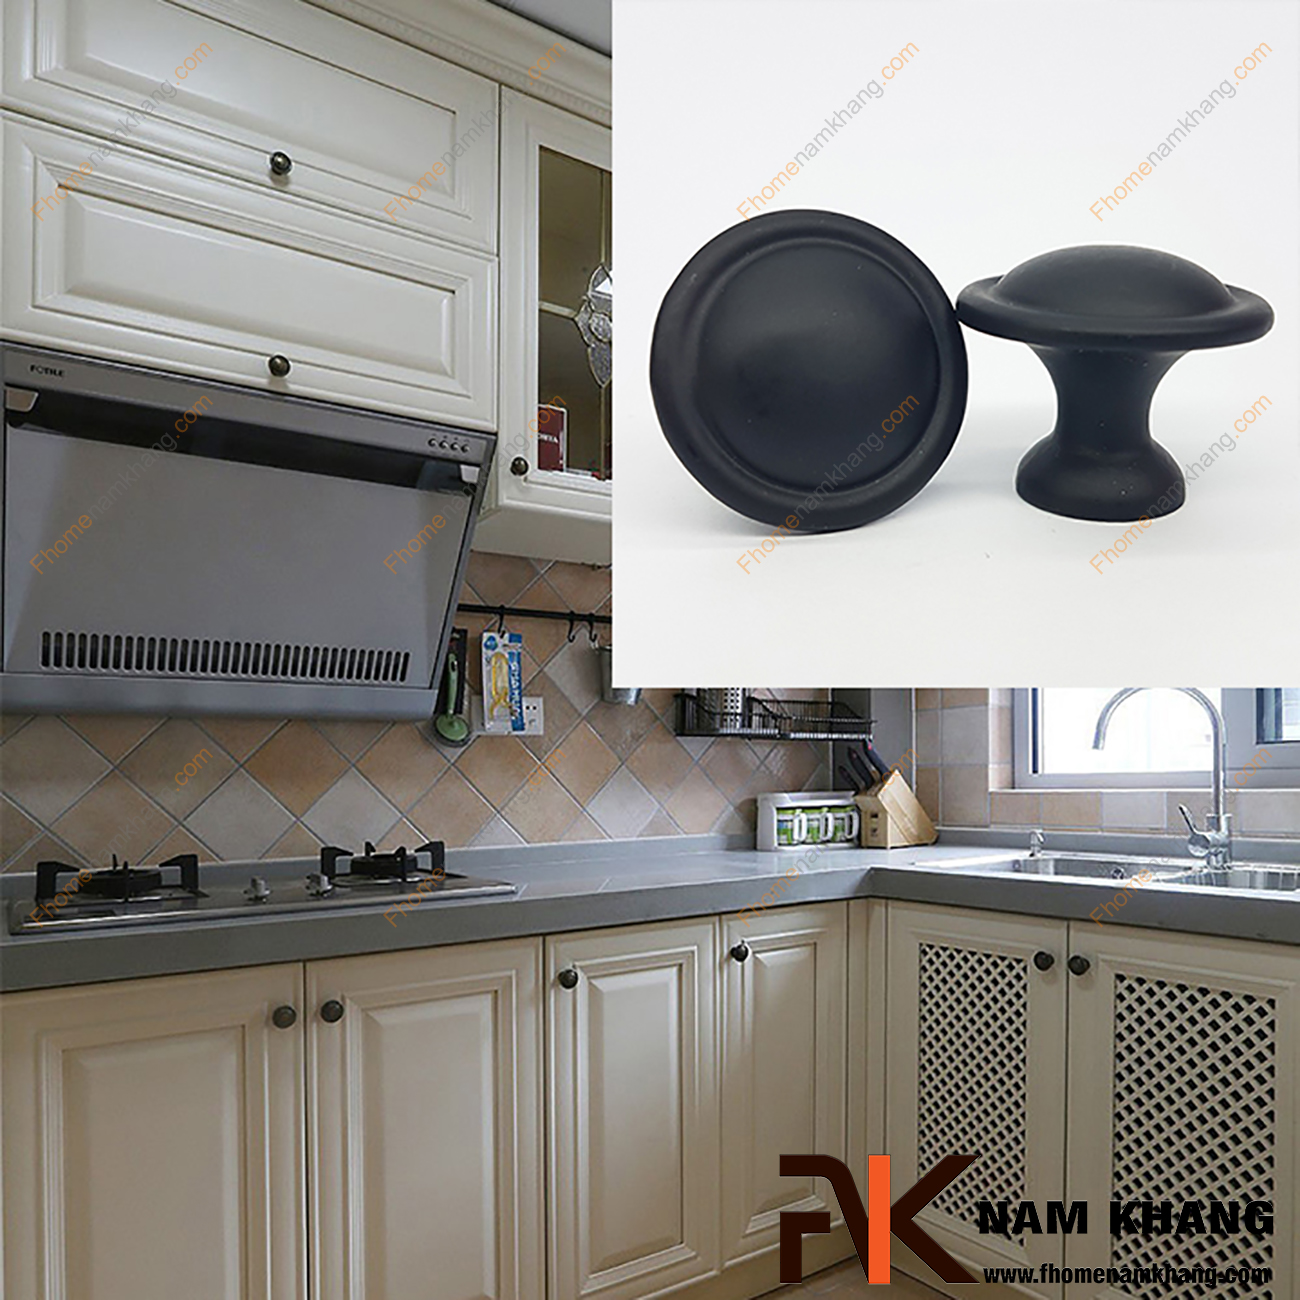 Tay nắm tủ tròn màu đen mờ NK022  là sản phẩm giữ nguyên thiết kế đơn giản từ hợp kim kim loại bền đẹp tạo cảm giác thoải mái và thao tác dễ dàng theo nhu cầu người sử dụng